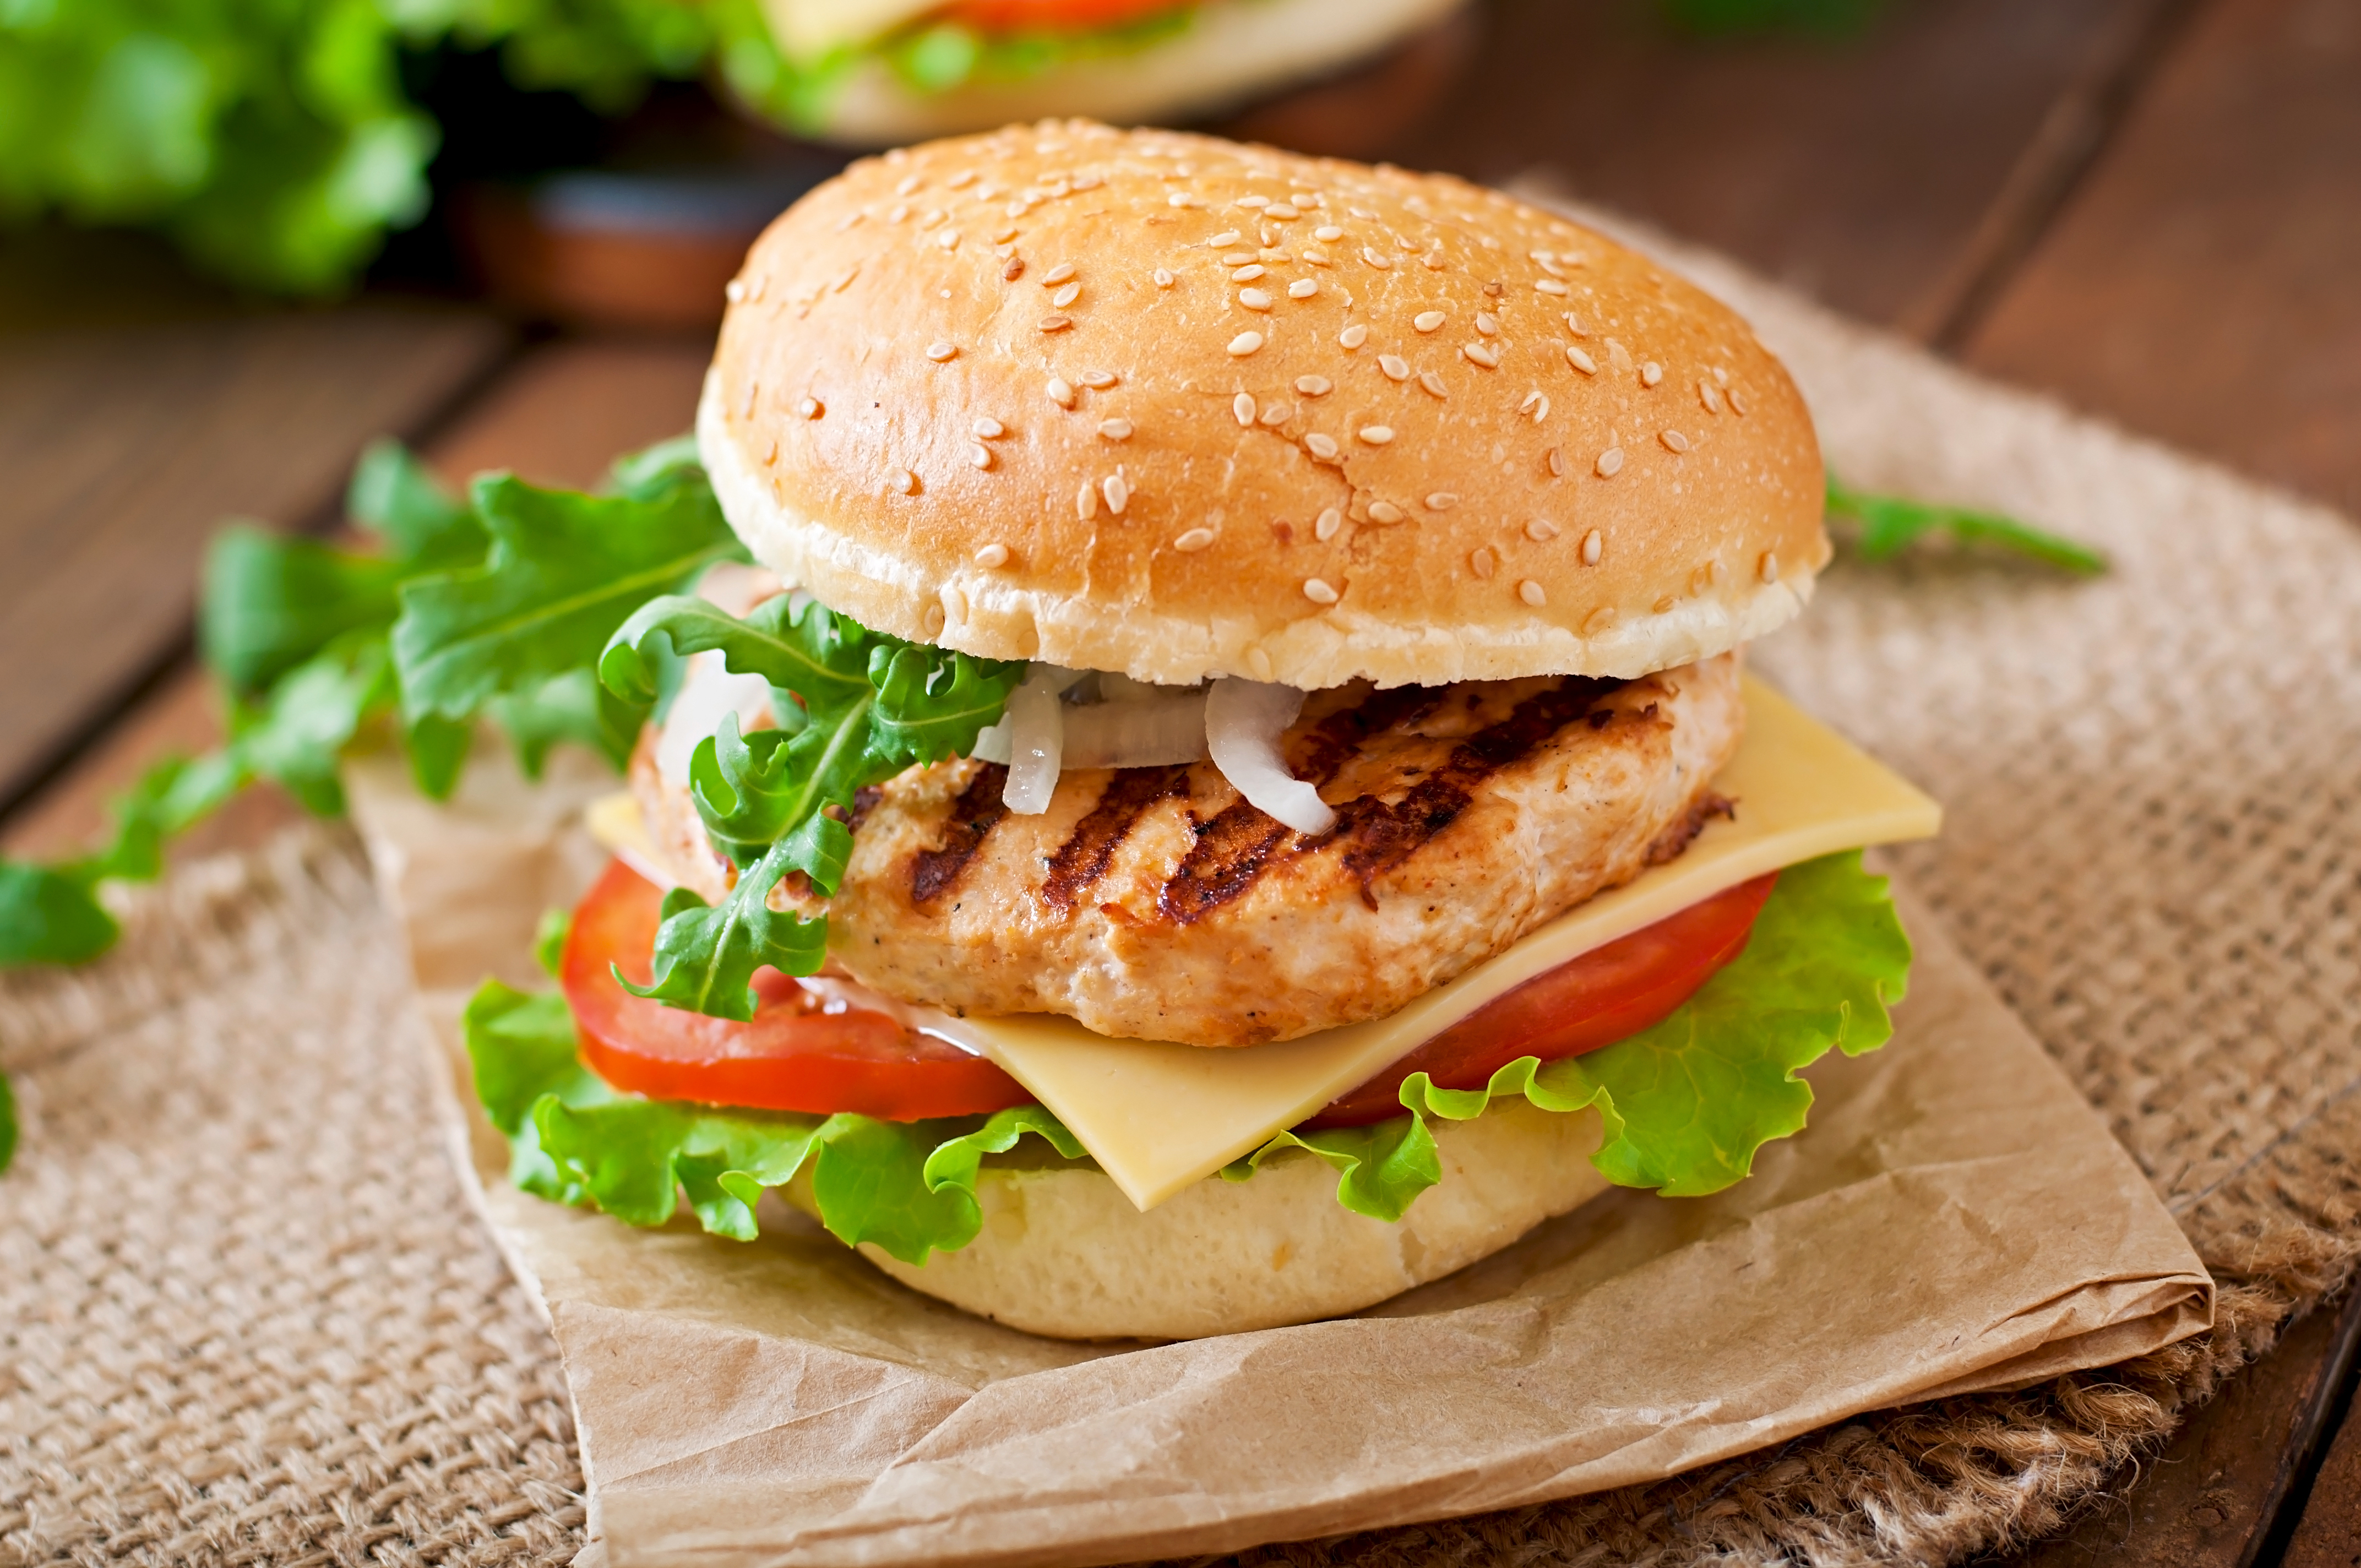 A turkey burger | Source: Shutterstock